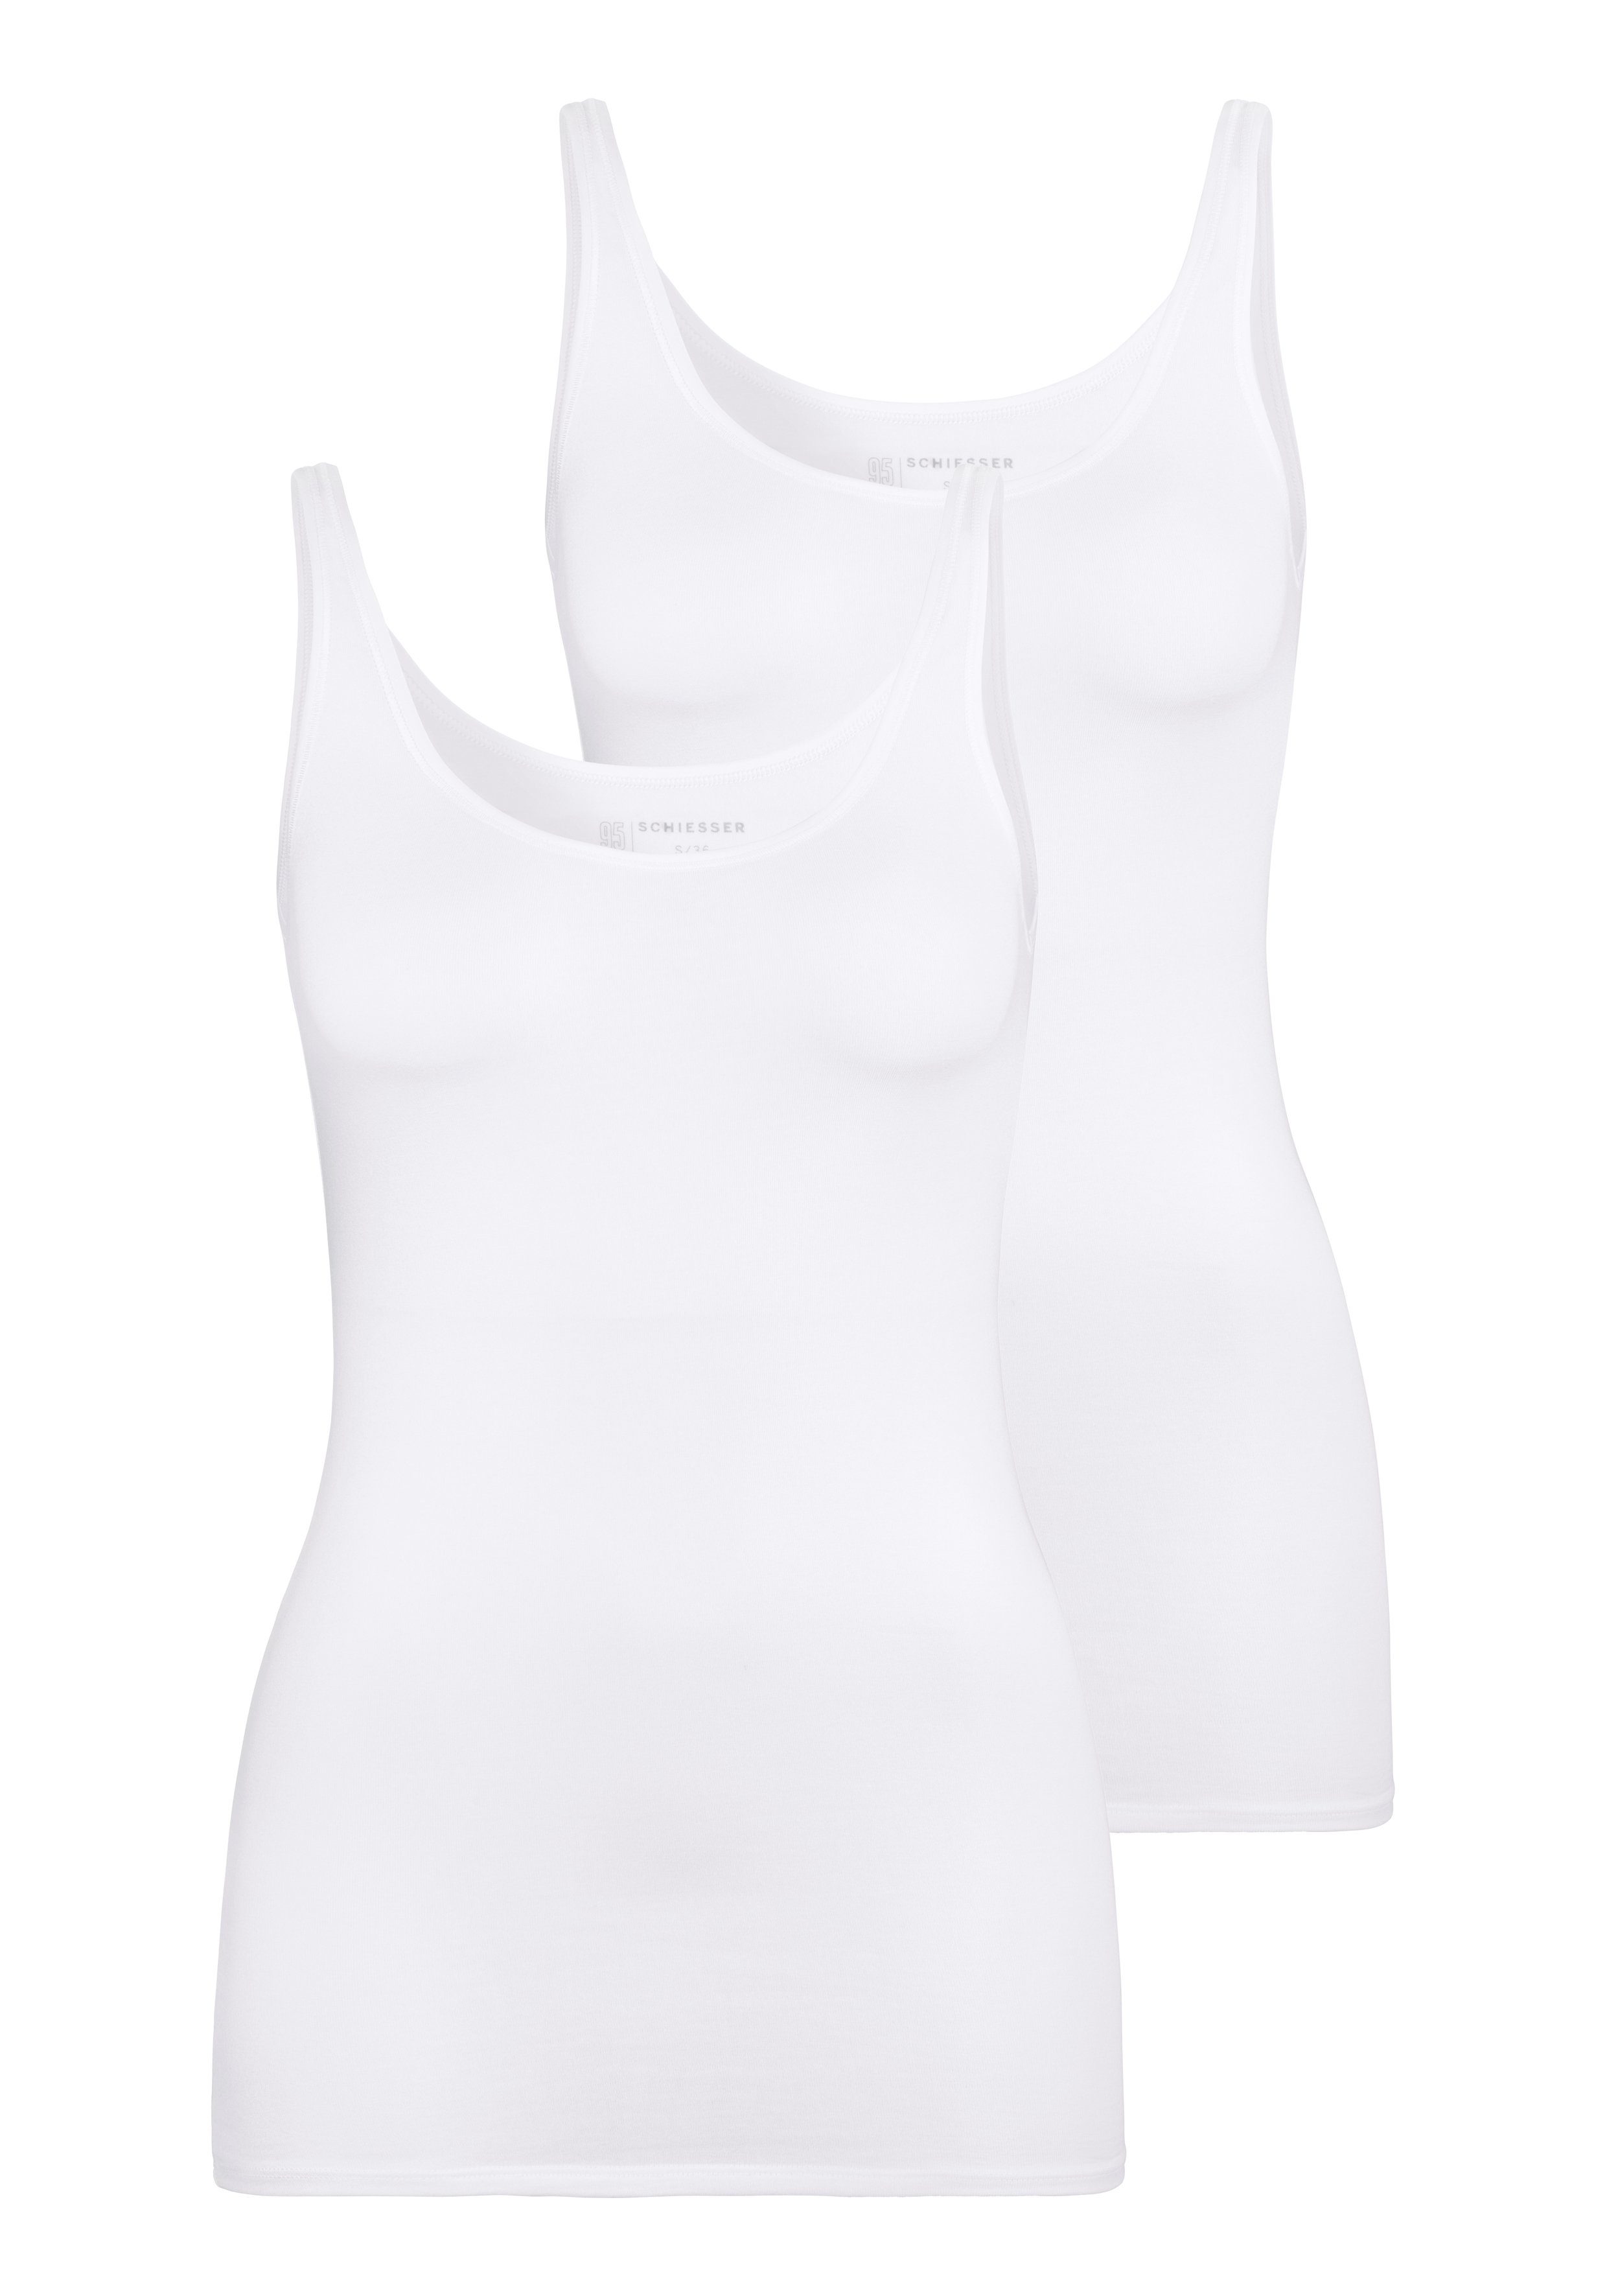 Schiesser Unterhemd (2er-Pack) 2xweiß mit elastischer Single-Jersey-Qualität